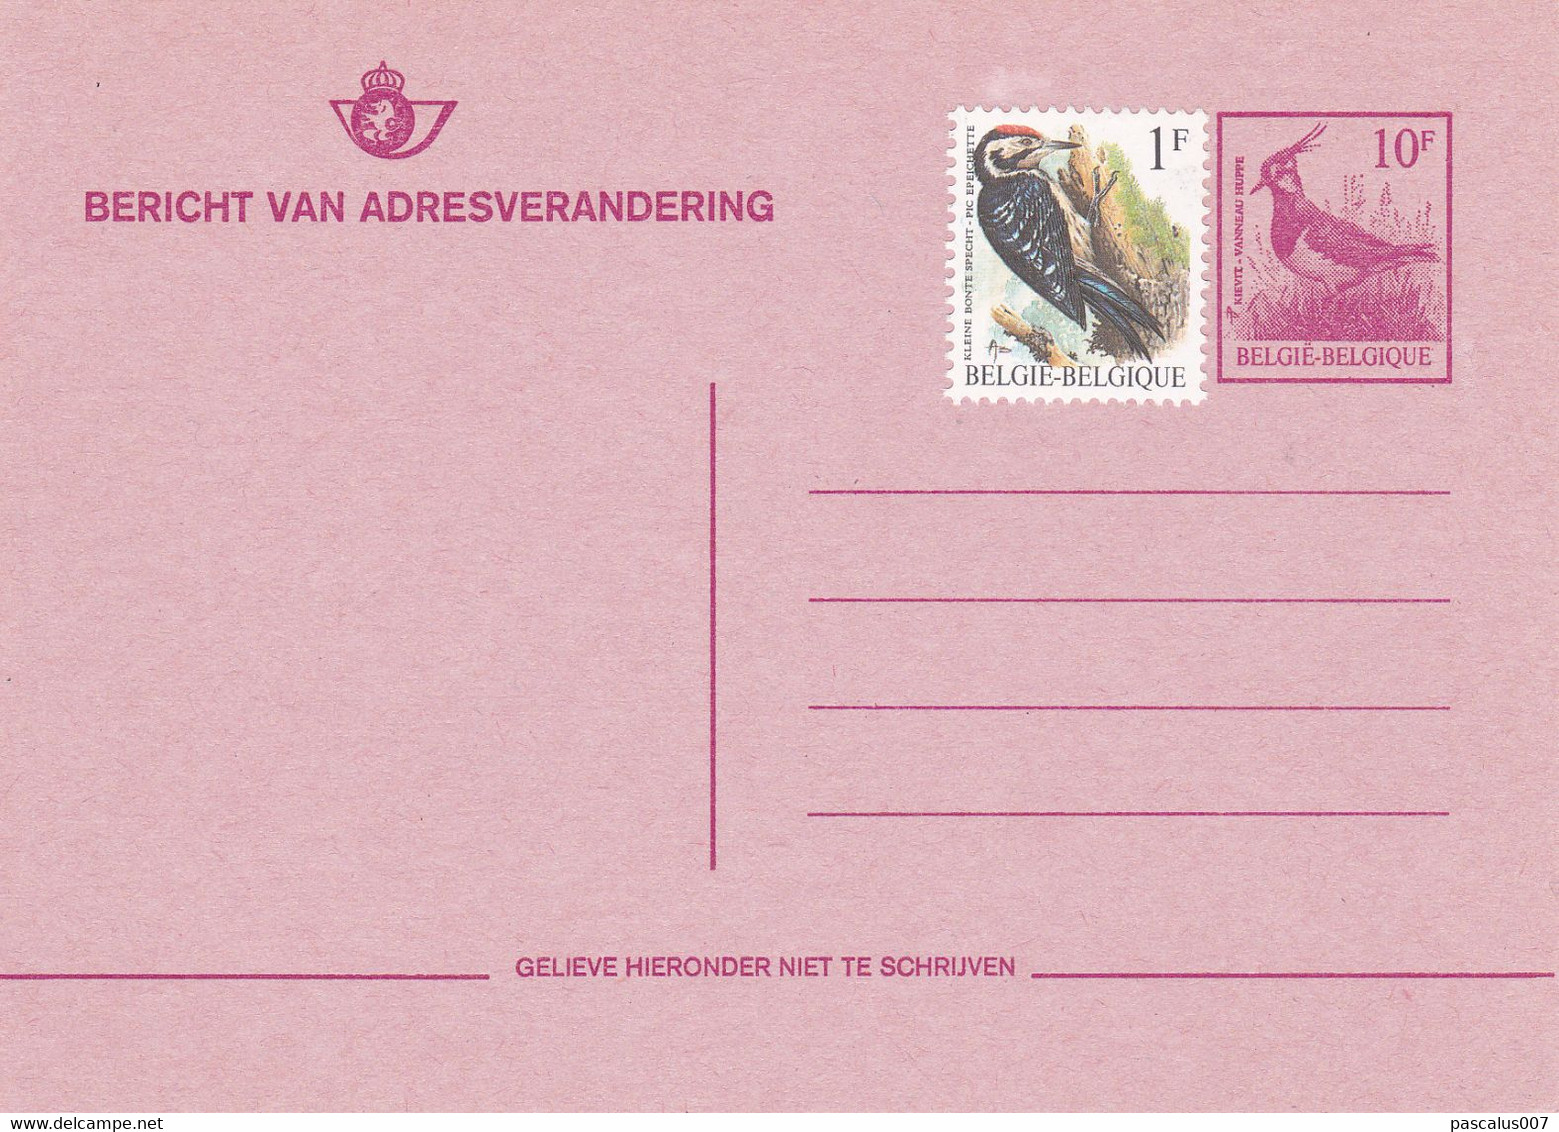 B01-396 Belgique CEP 27 N - Carte Entier Postal  1984 - COB Vierge - Série Oiseau - Avis De Changement Adresse - Addr. Chang.